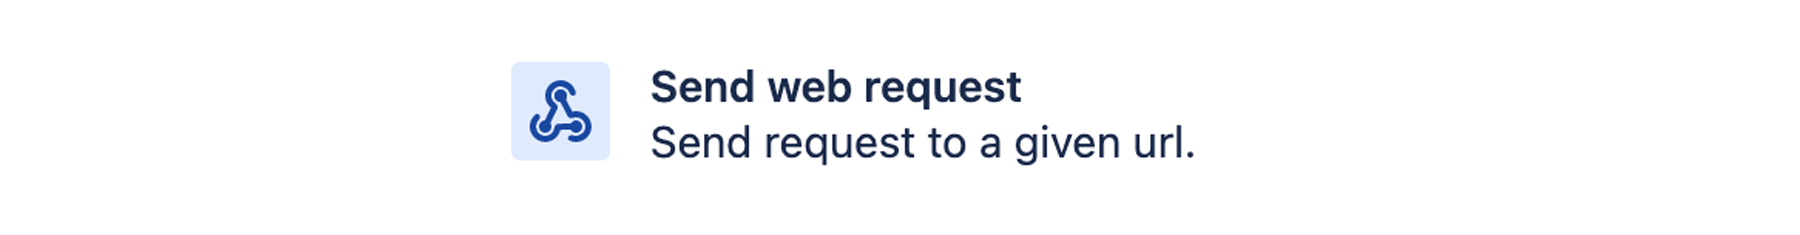 Send web request (Envoyer une demande web)